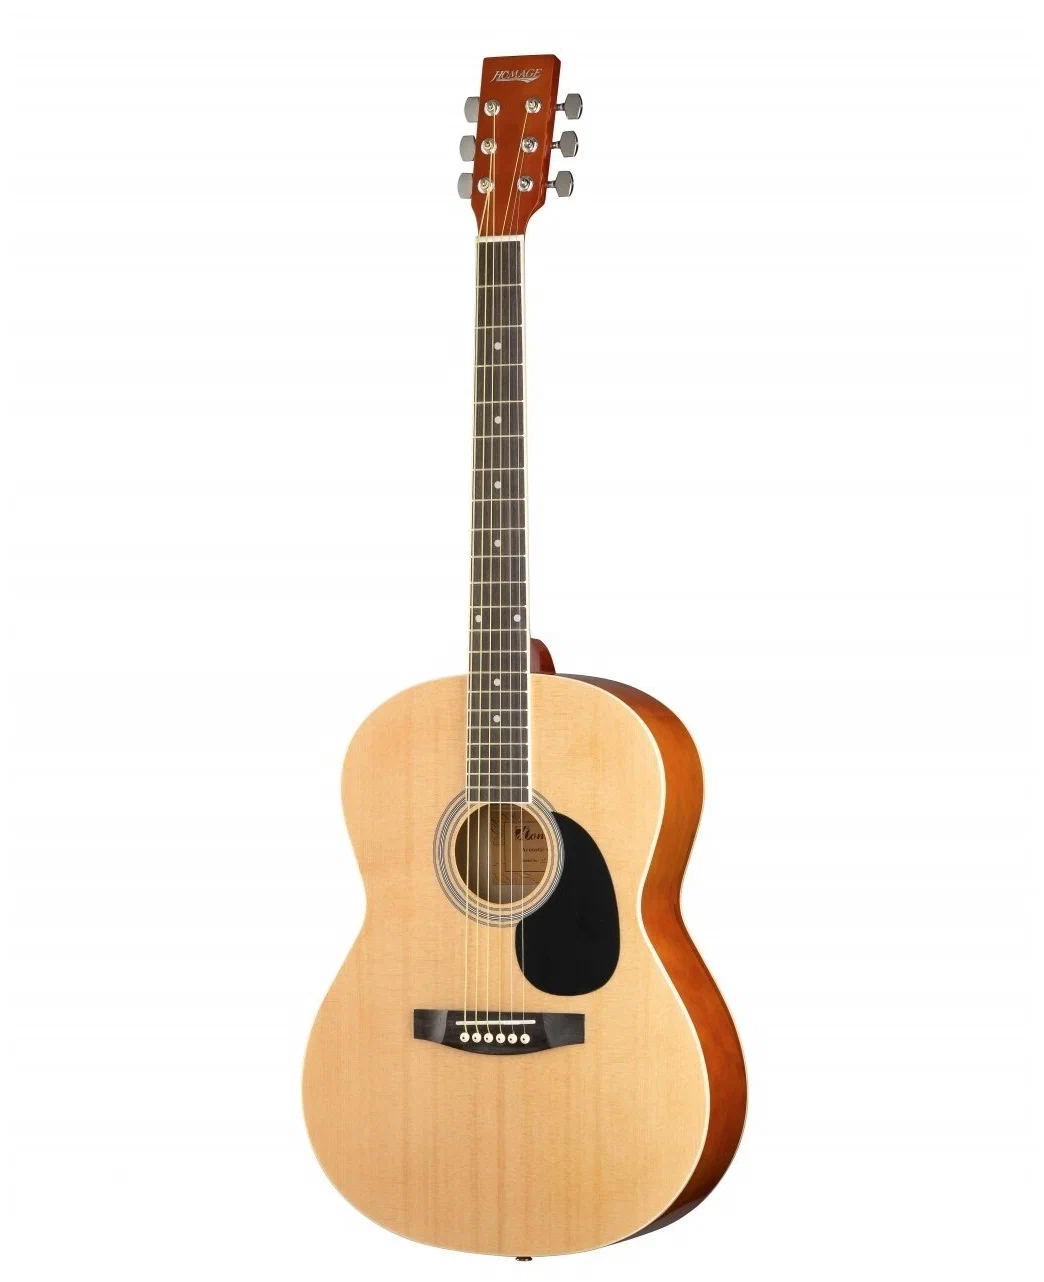 Акустические гитары Homage LF-3910 ремень для гитары жёлтое пламя длина 60 117 см ширина 5 см 12 медиаторов в подарок